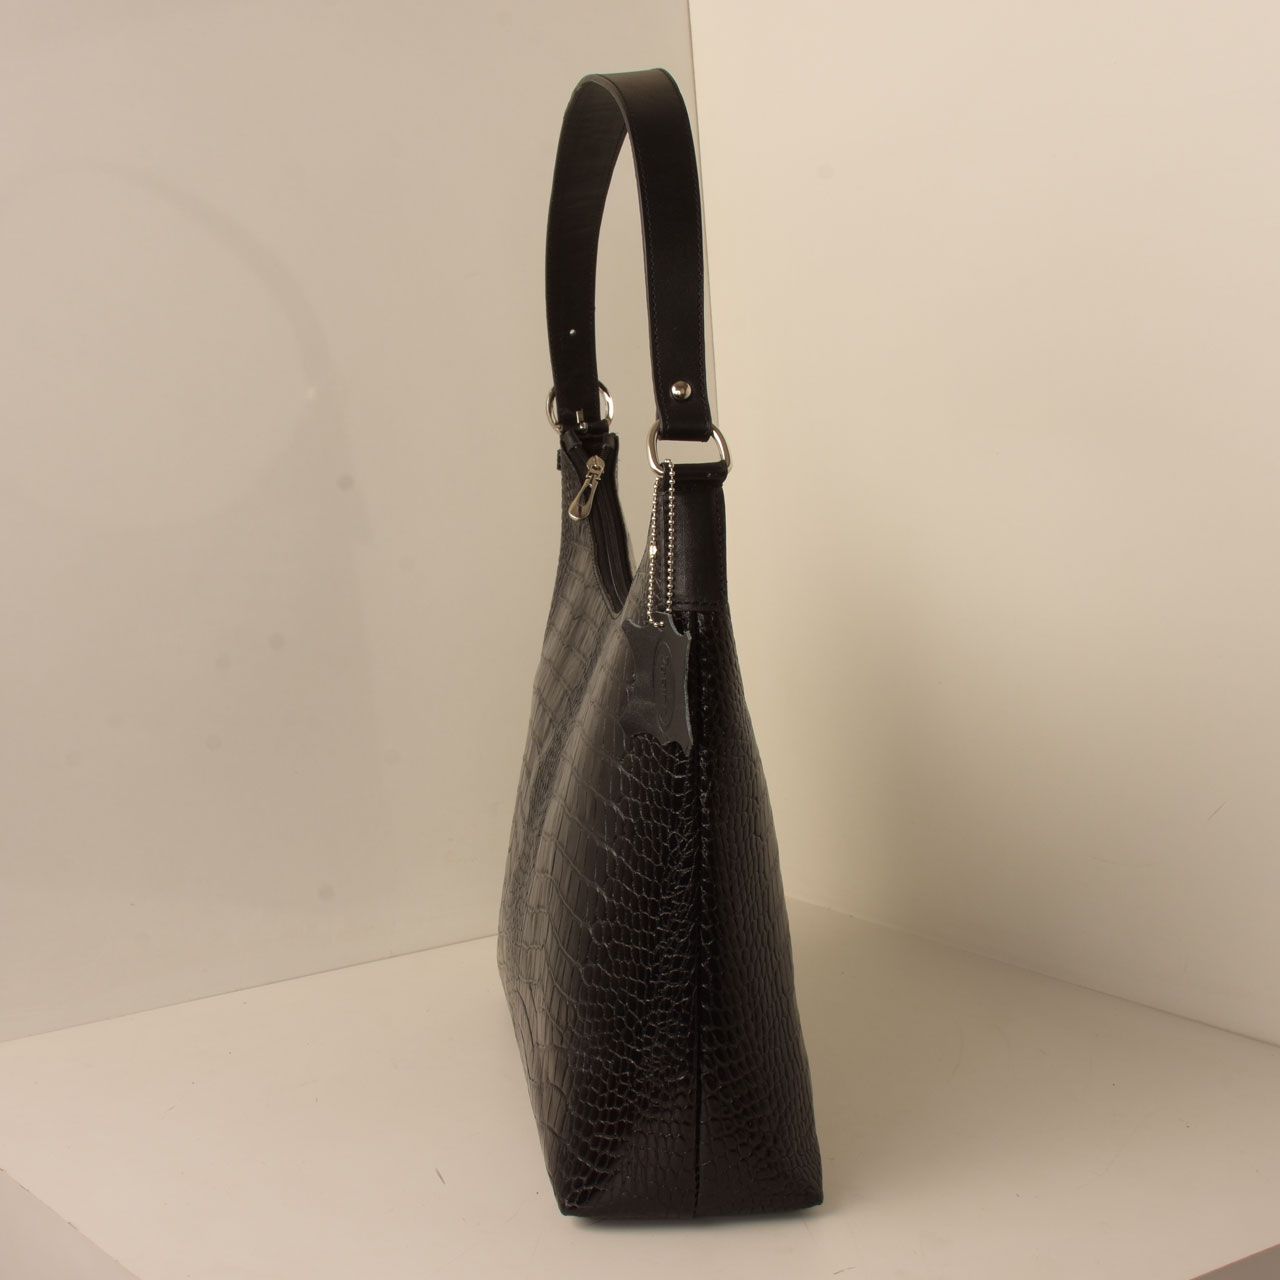  کیف دوشی زنانه پارینه چرم مدل V203-1 -  - 9